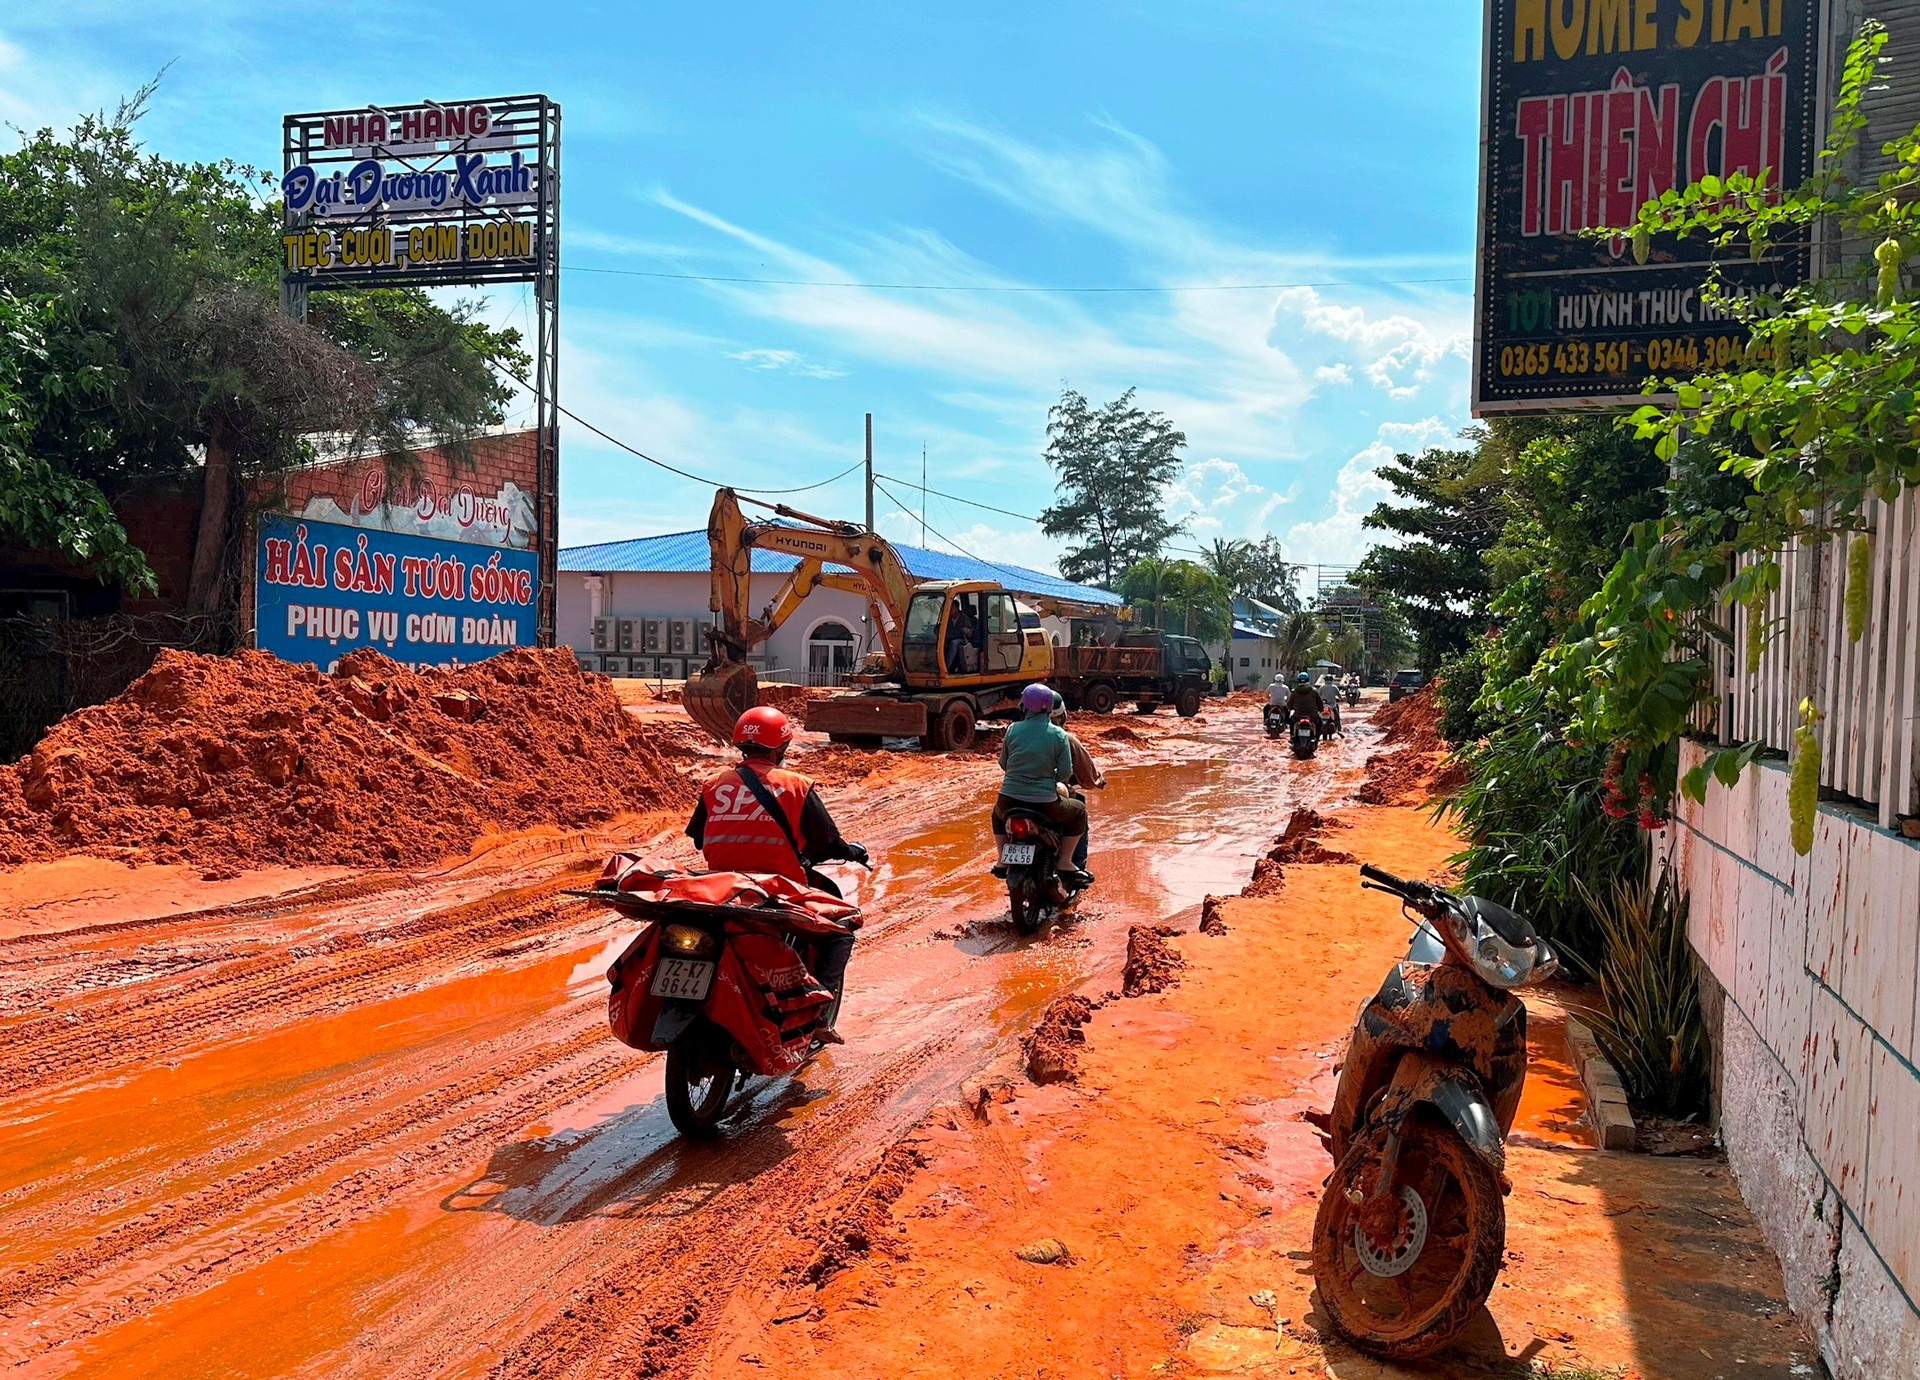 Cát từ khu vực một dự án tràn xuống đường du lịch: Sở Xây dựng Bình Thuận sẽ kiểm tra tổng thể- Ảnh 1.